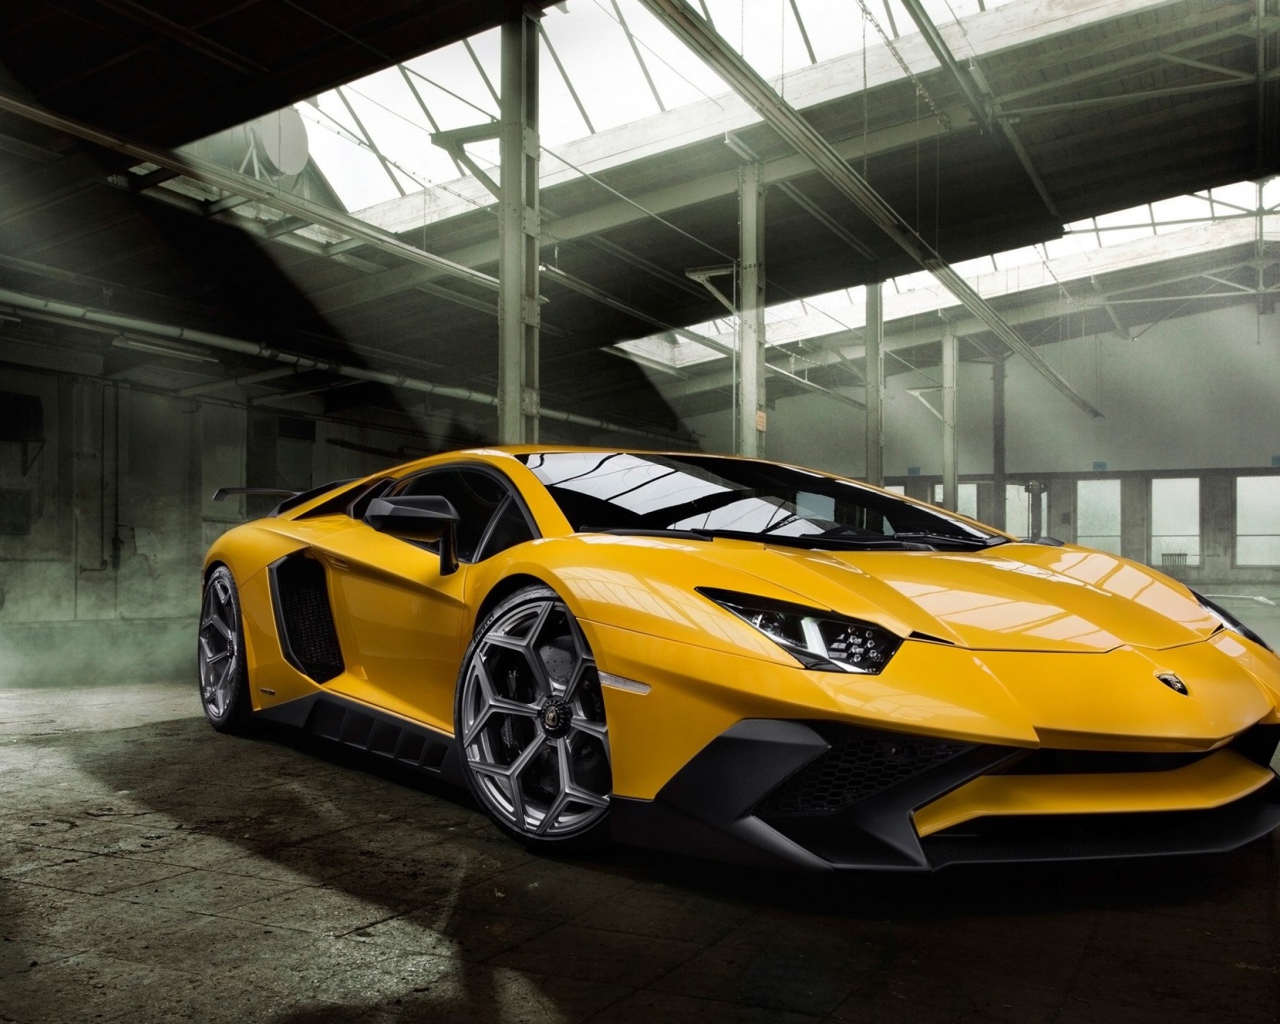 Желтый спортивный автомобиль Lamborghini Aventador 